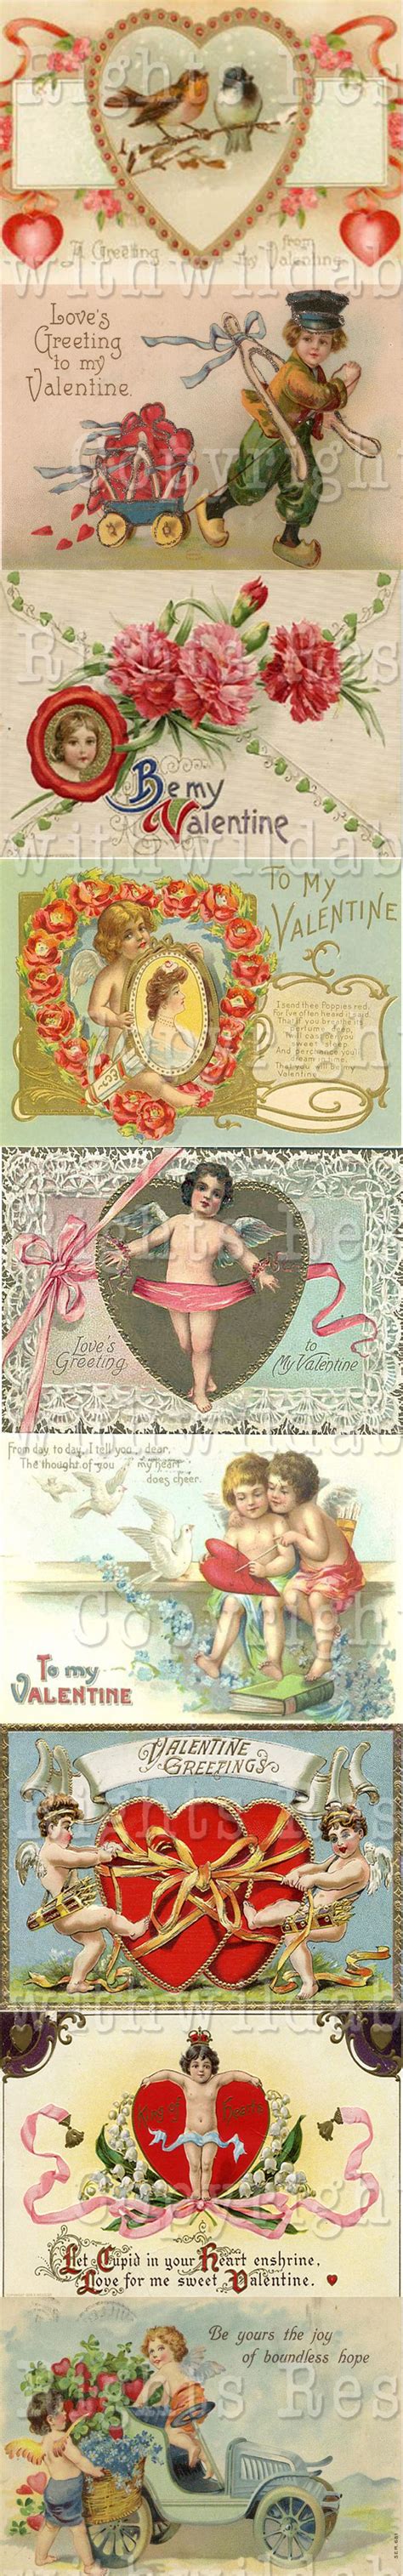 Valentine Digital Collage Sheets Vintage Postcard Aceo Digital Art